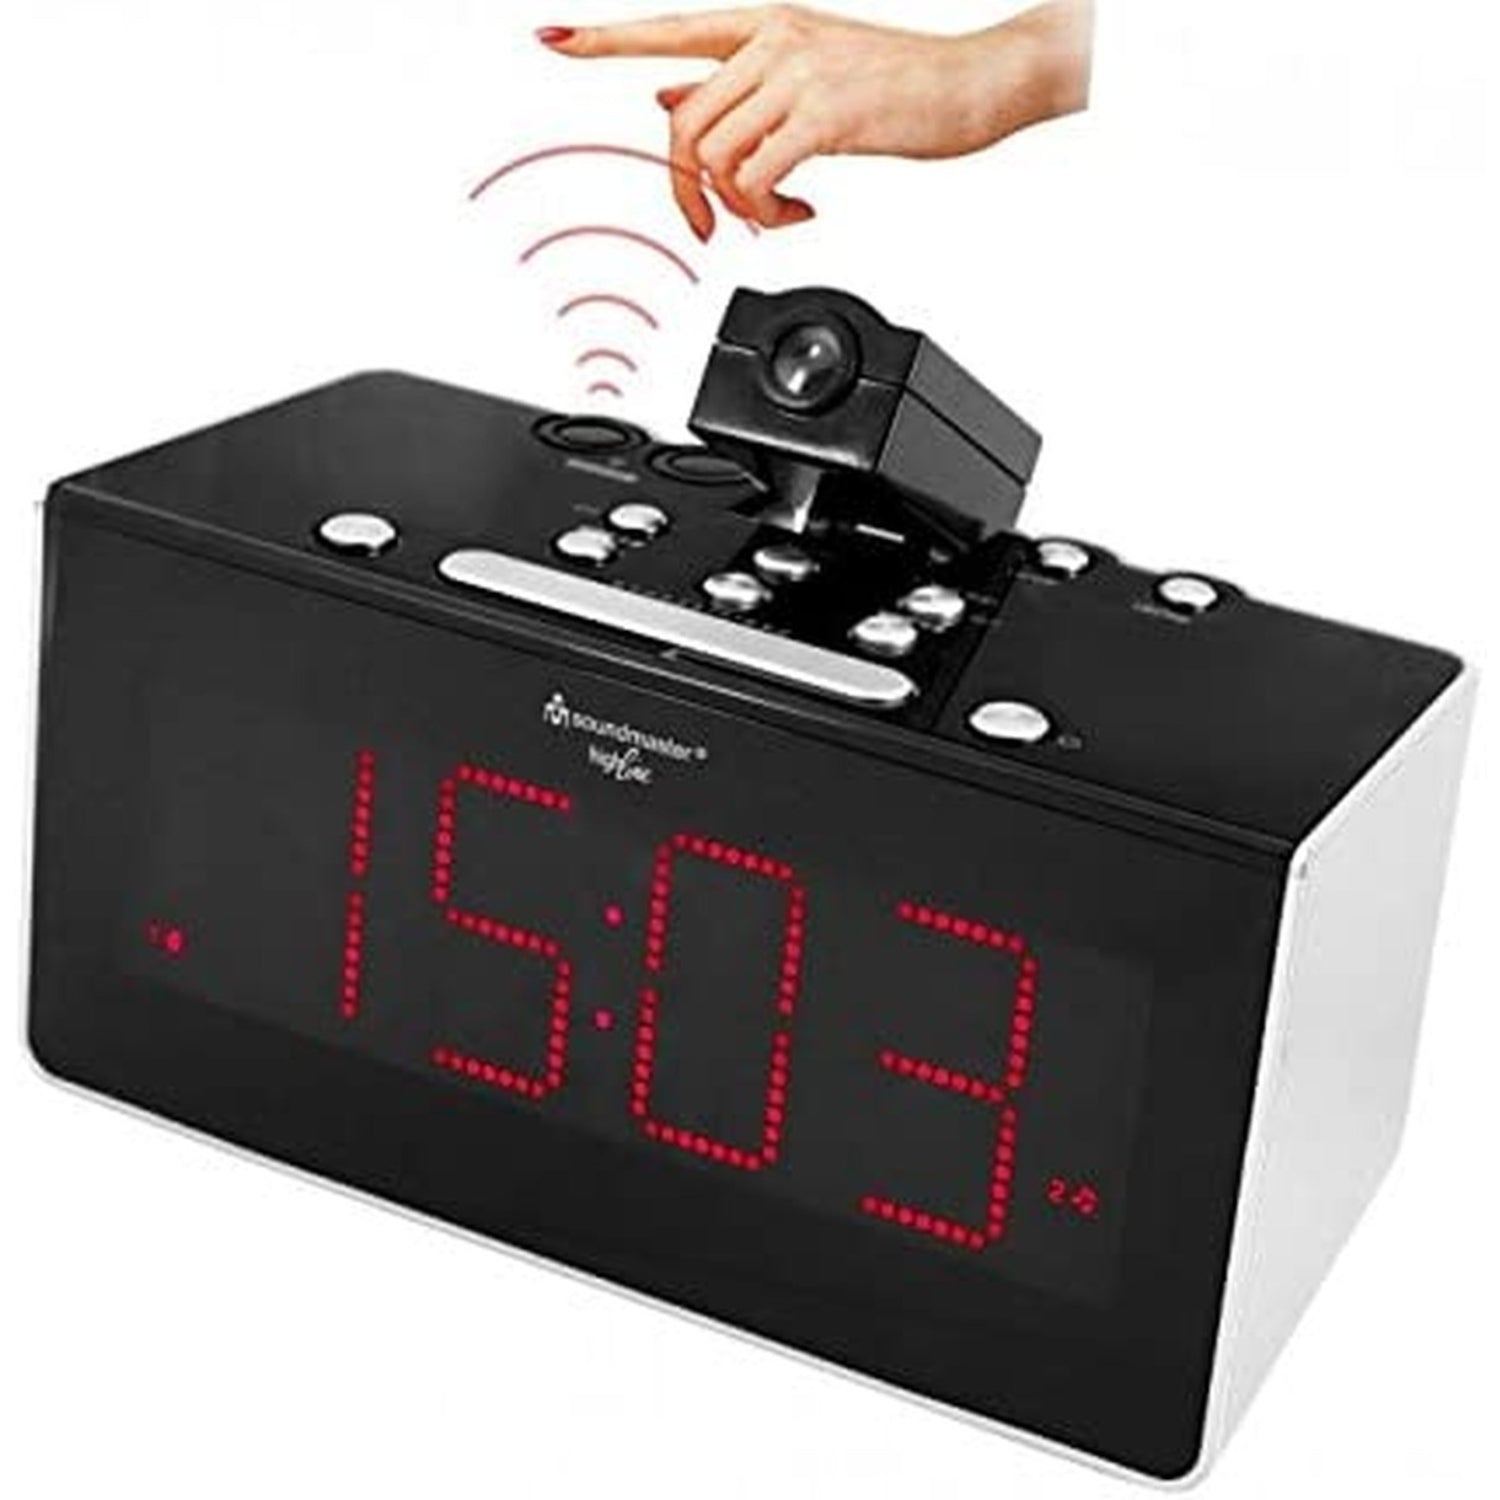 Soundmaster HighLine FUR6005 radio-réveil radiocommandé avec projection et capteur IR radio-réveil à projection